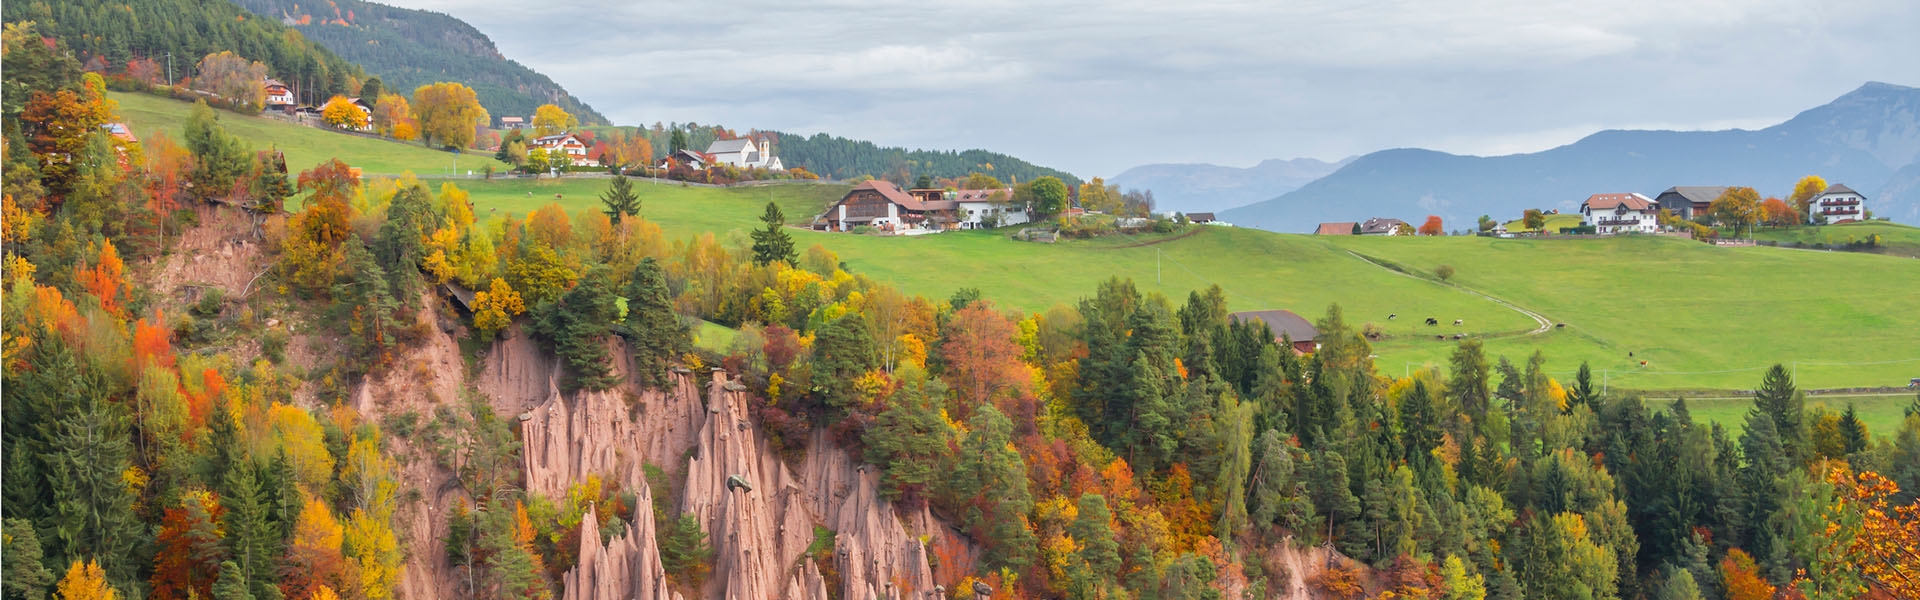 Herbstliche Stimmung in Südtirol